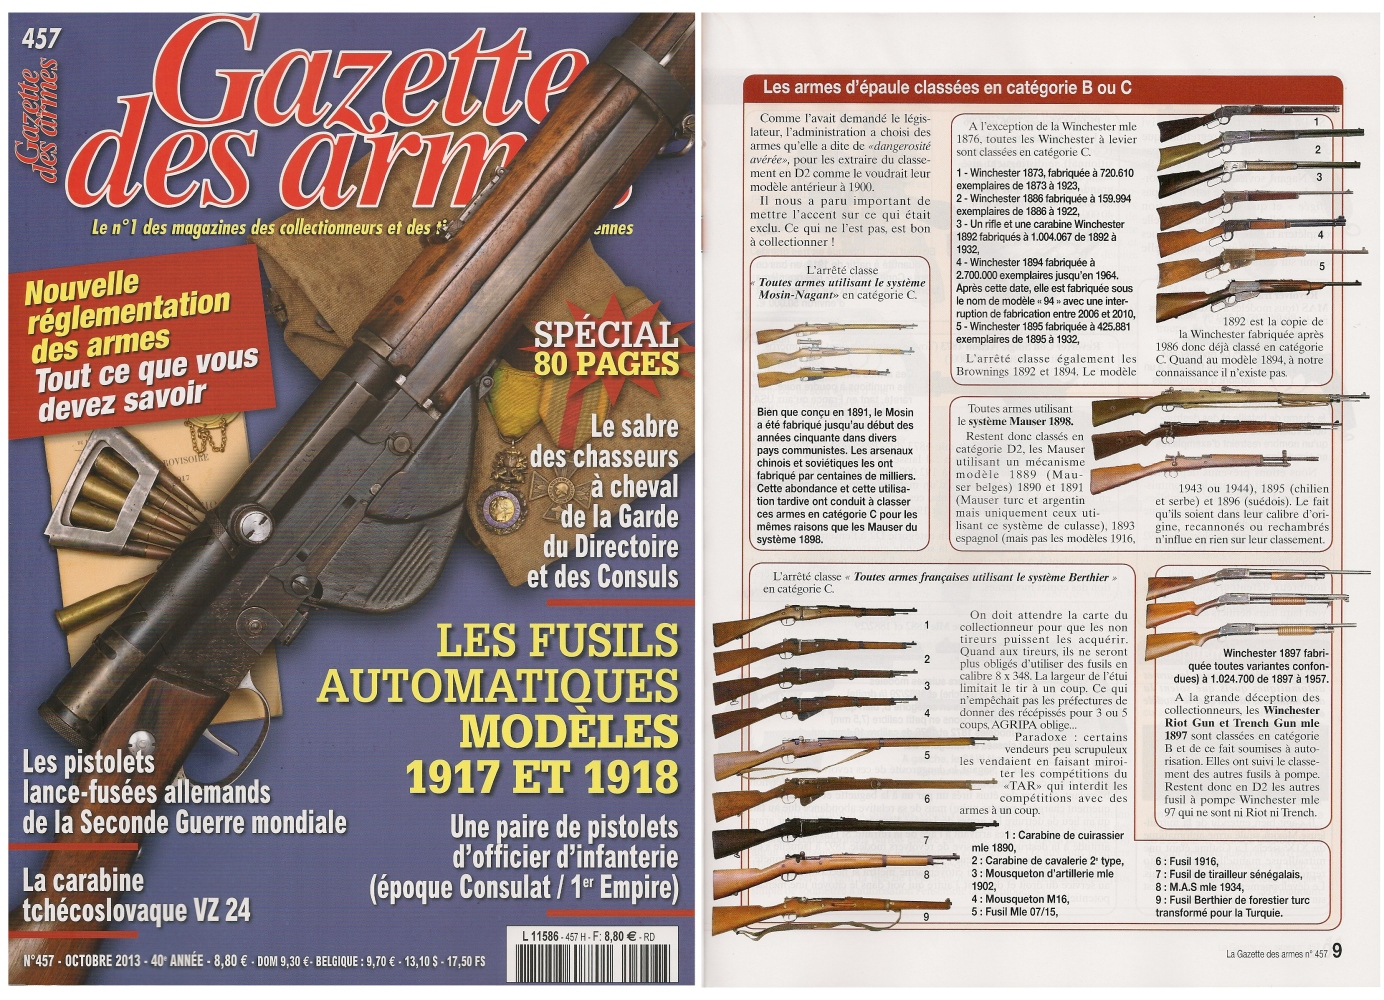 La nouvelle réglementation des armes a fait l’objet d’un article publié sur 10 pages dans le magazine mensuel Gazette des Armes n° 457 (octobre 2013)